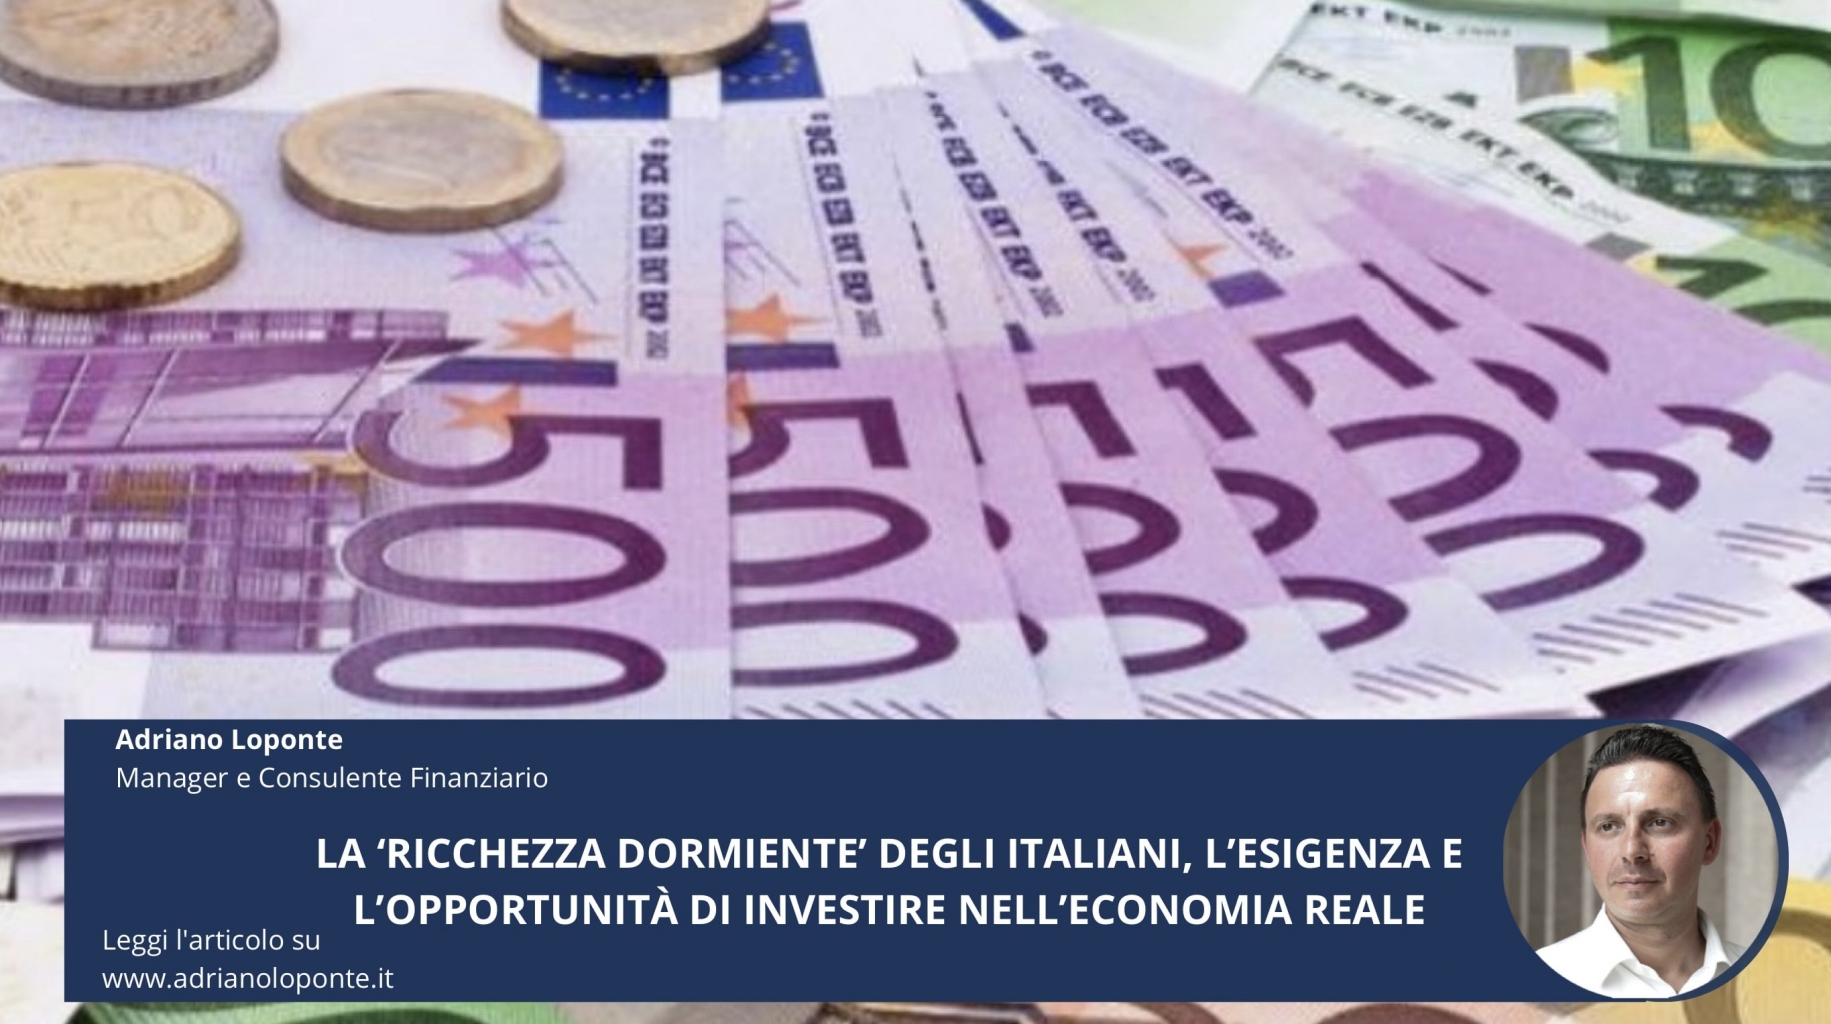 La ‘ricchezza dormiente’ degli italiani, l’esigenza e l’opportunità di investire nell’economia reale